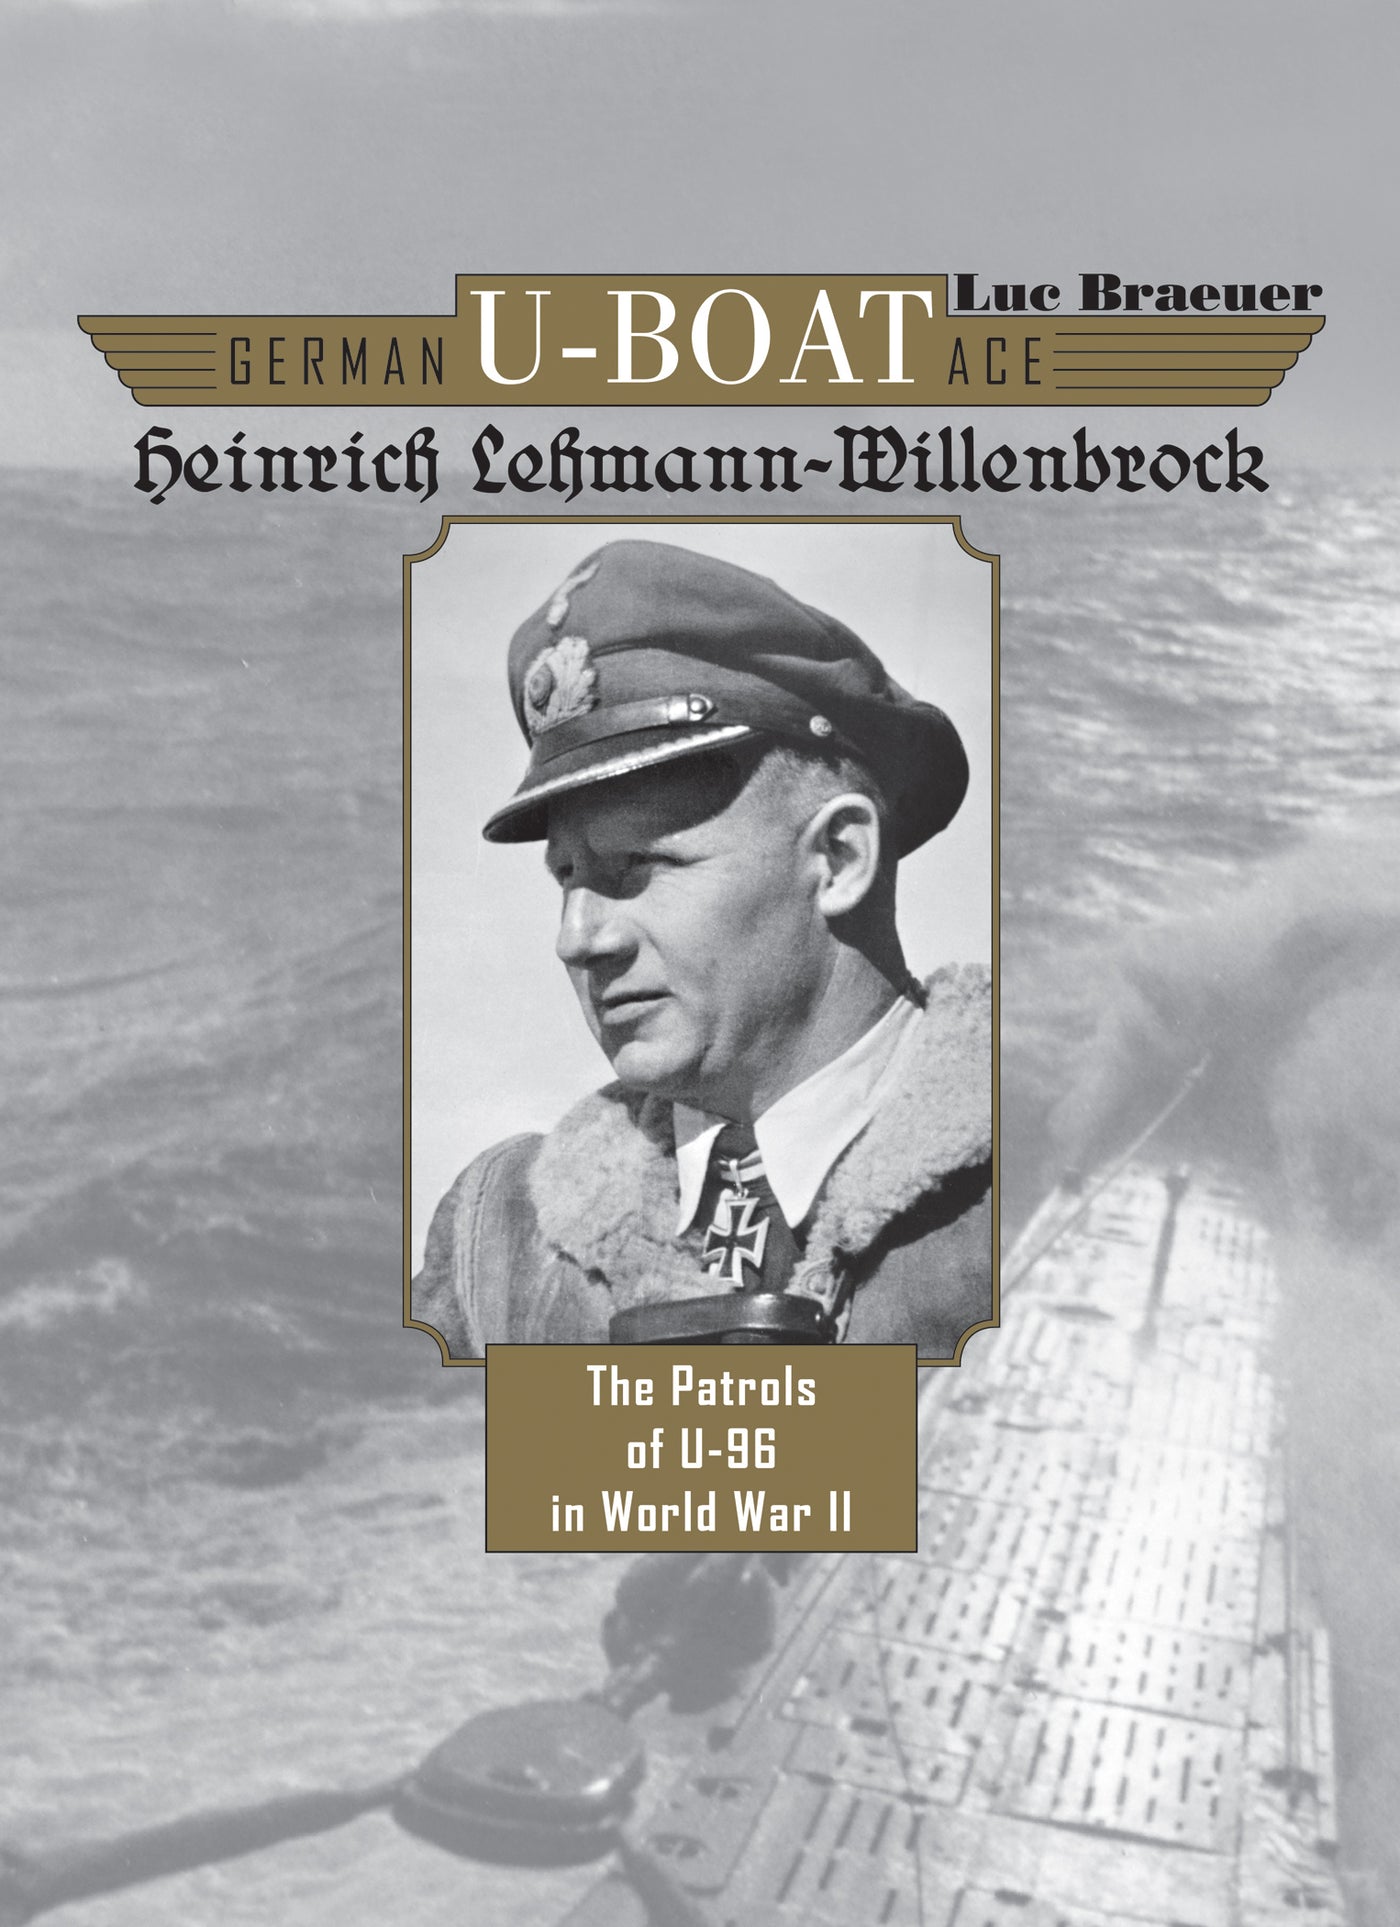 Deutsches U-Boot-Ass Heinrich Lehmann-Willenbrock 